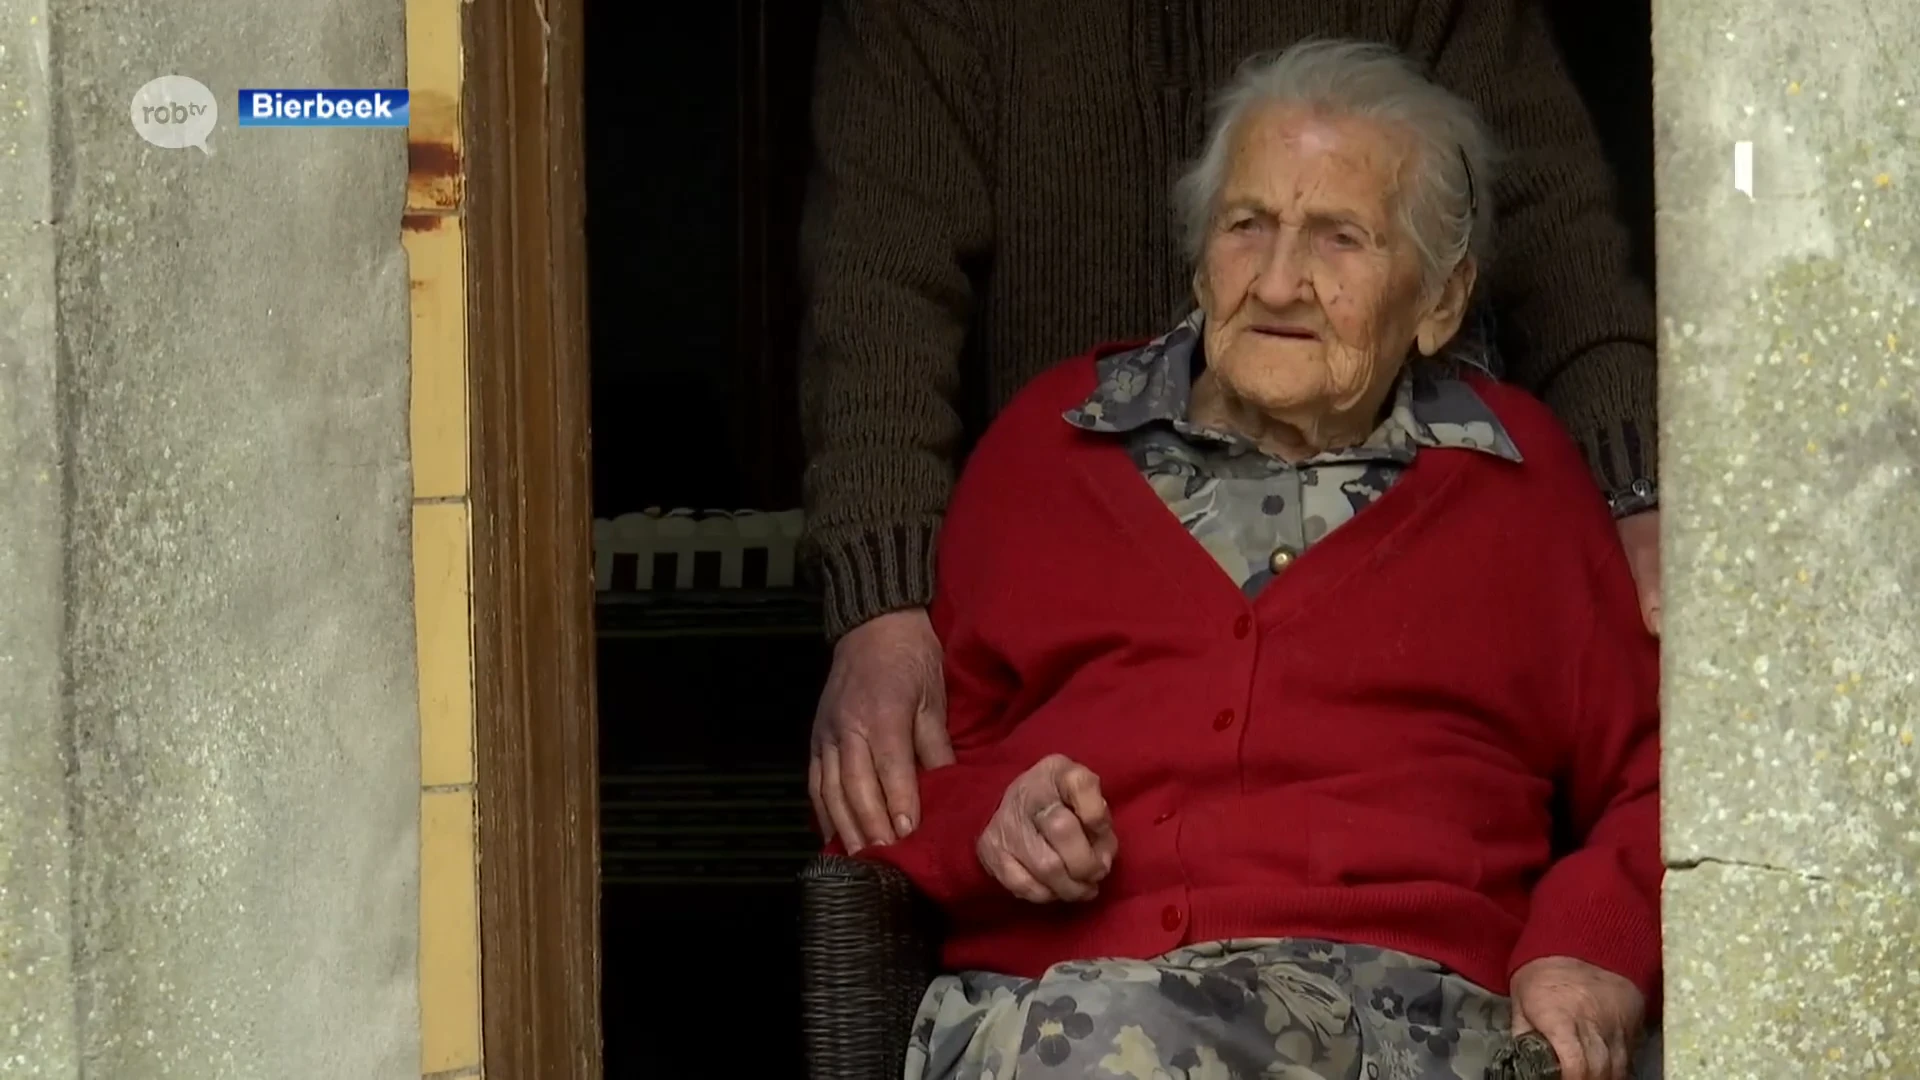 Bertha uit Bierbeek wordt 110 jaar en is daarmee de oudste Belg die nog thuis woont